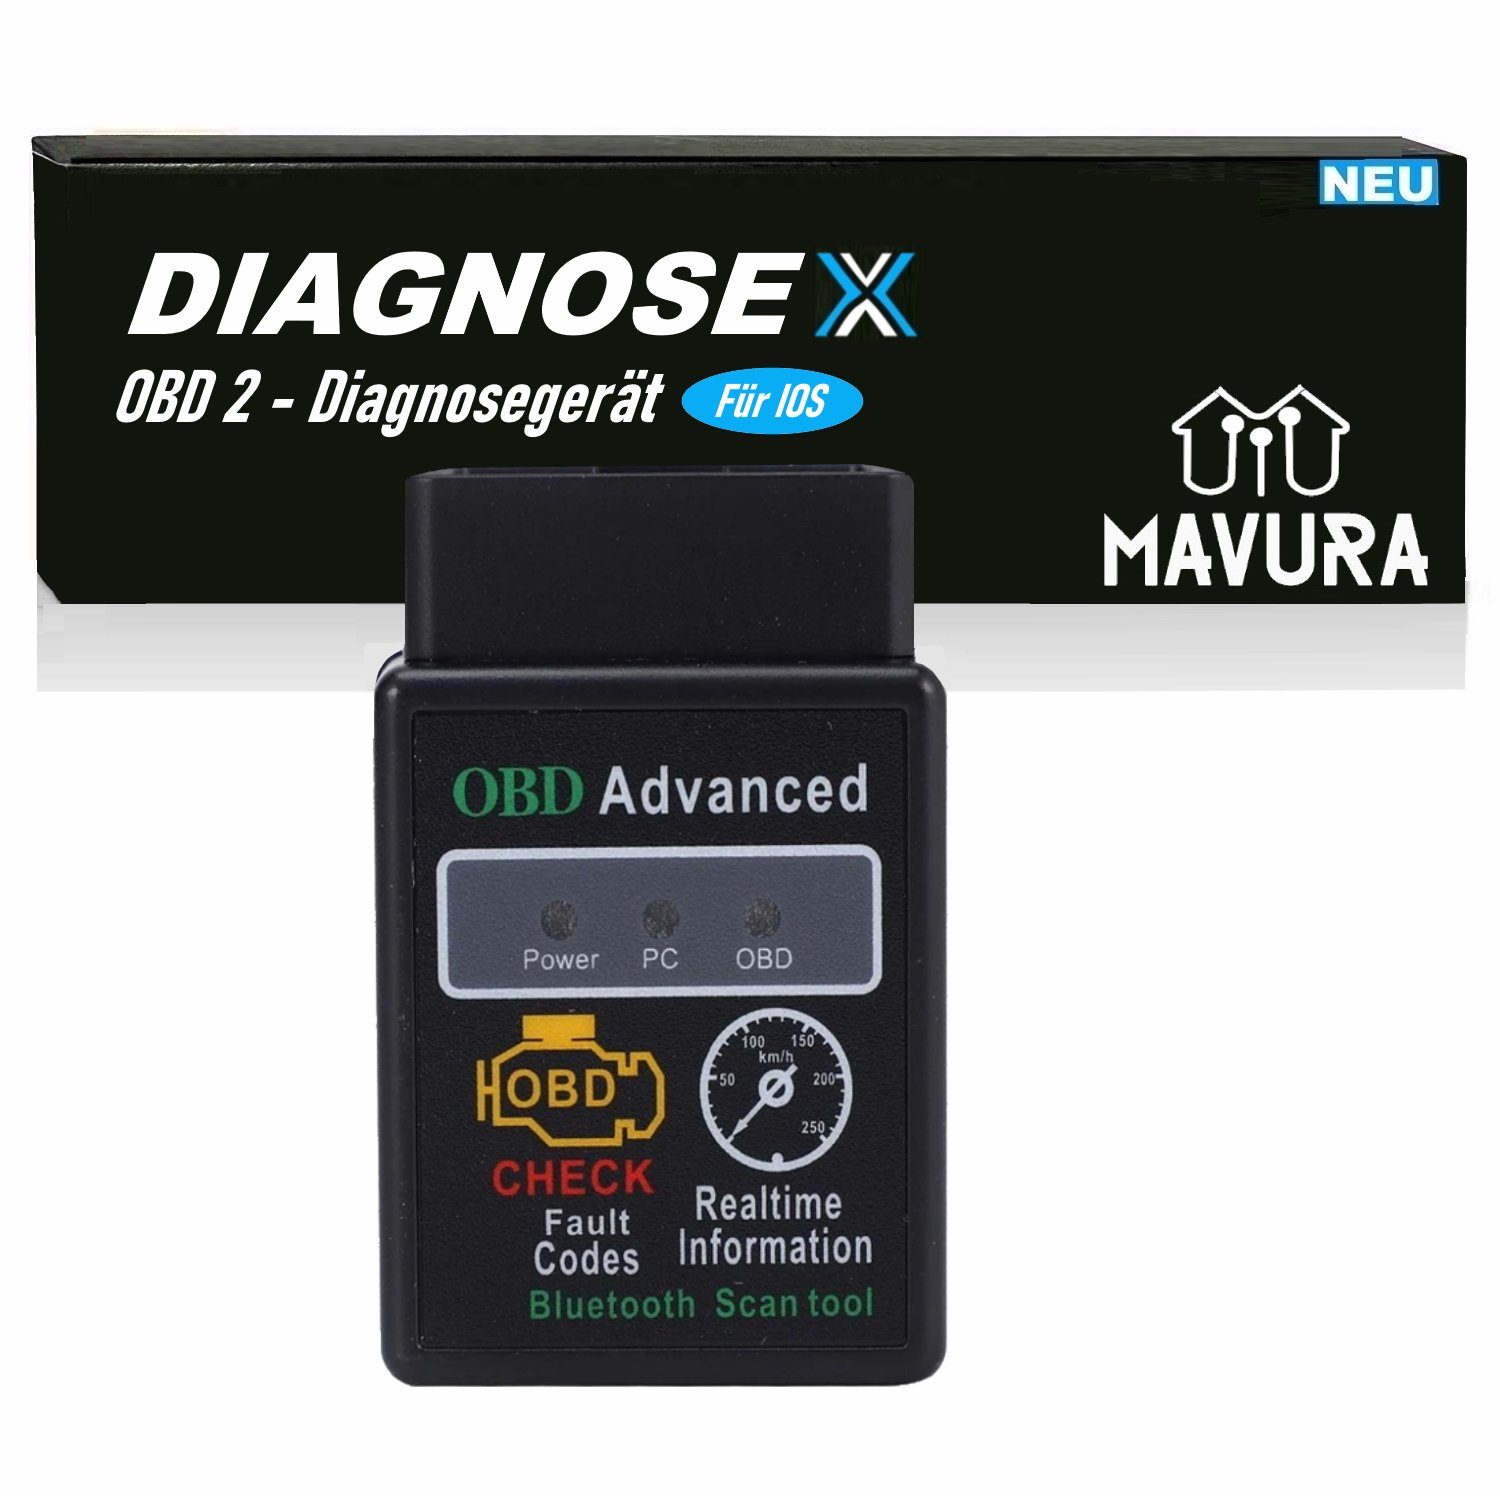 MAVURA OBD2-Diagnosegerät DIAGNOSEX OBD2 für Diagnosegerät Handy Adapter Apple Auslesegerät, Gerät Autoscan Diagnose Smartphone Bluetooth iOS Auto Iphone